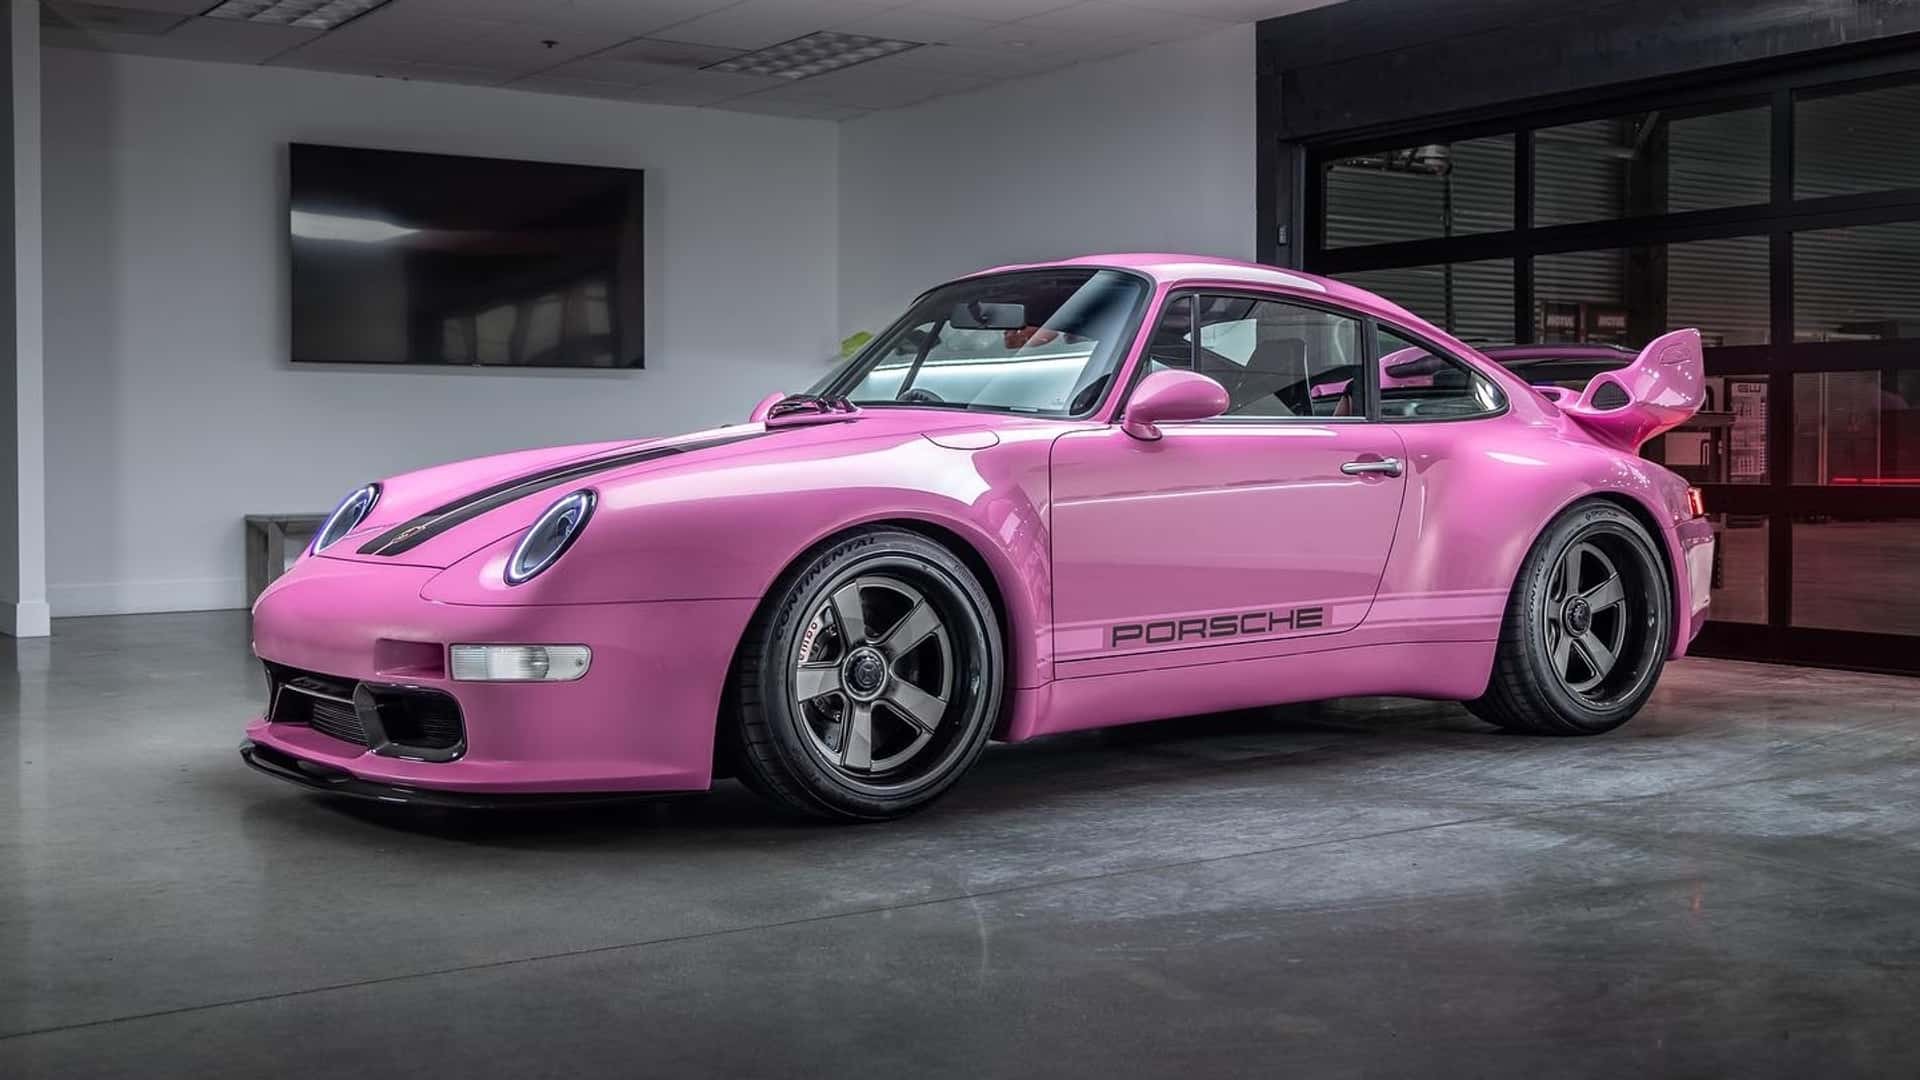 Gunther Werks' Presents One-Off Pink Porsche 911 Type 993